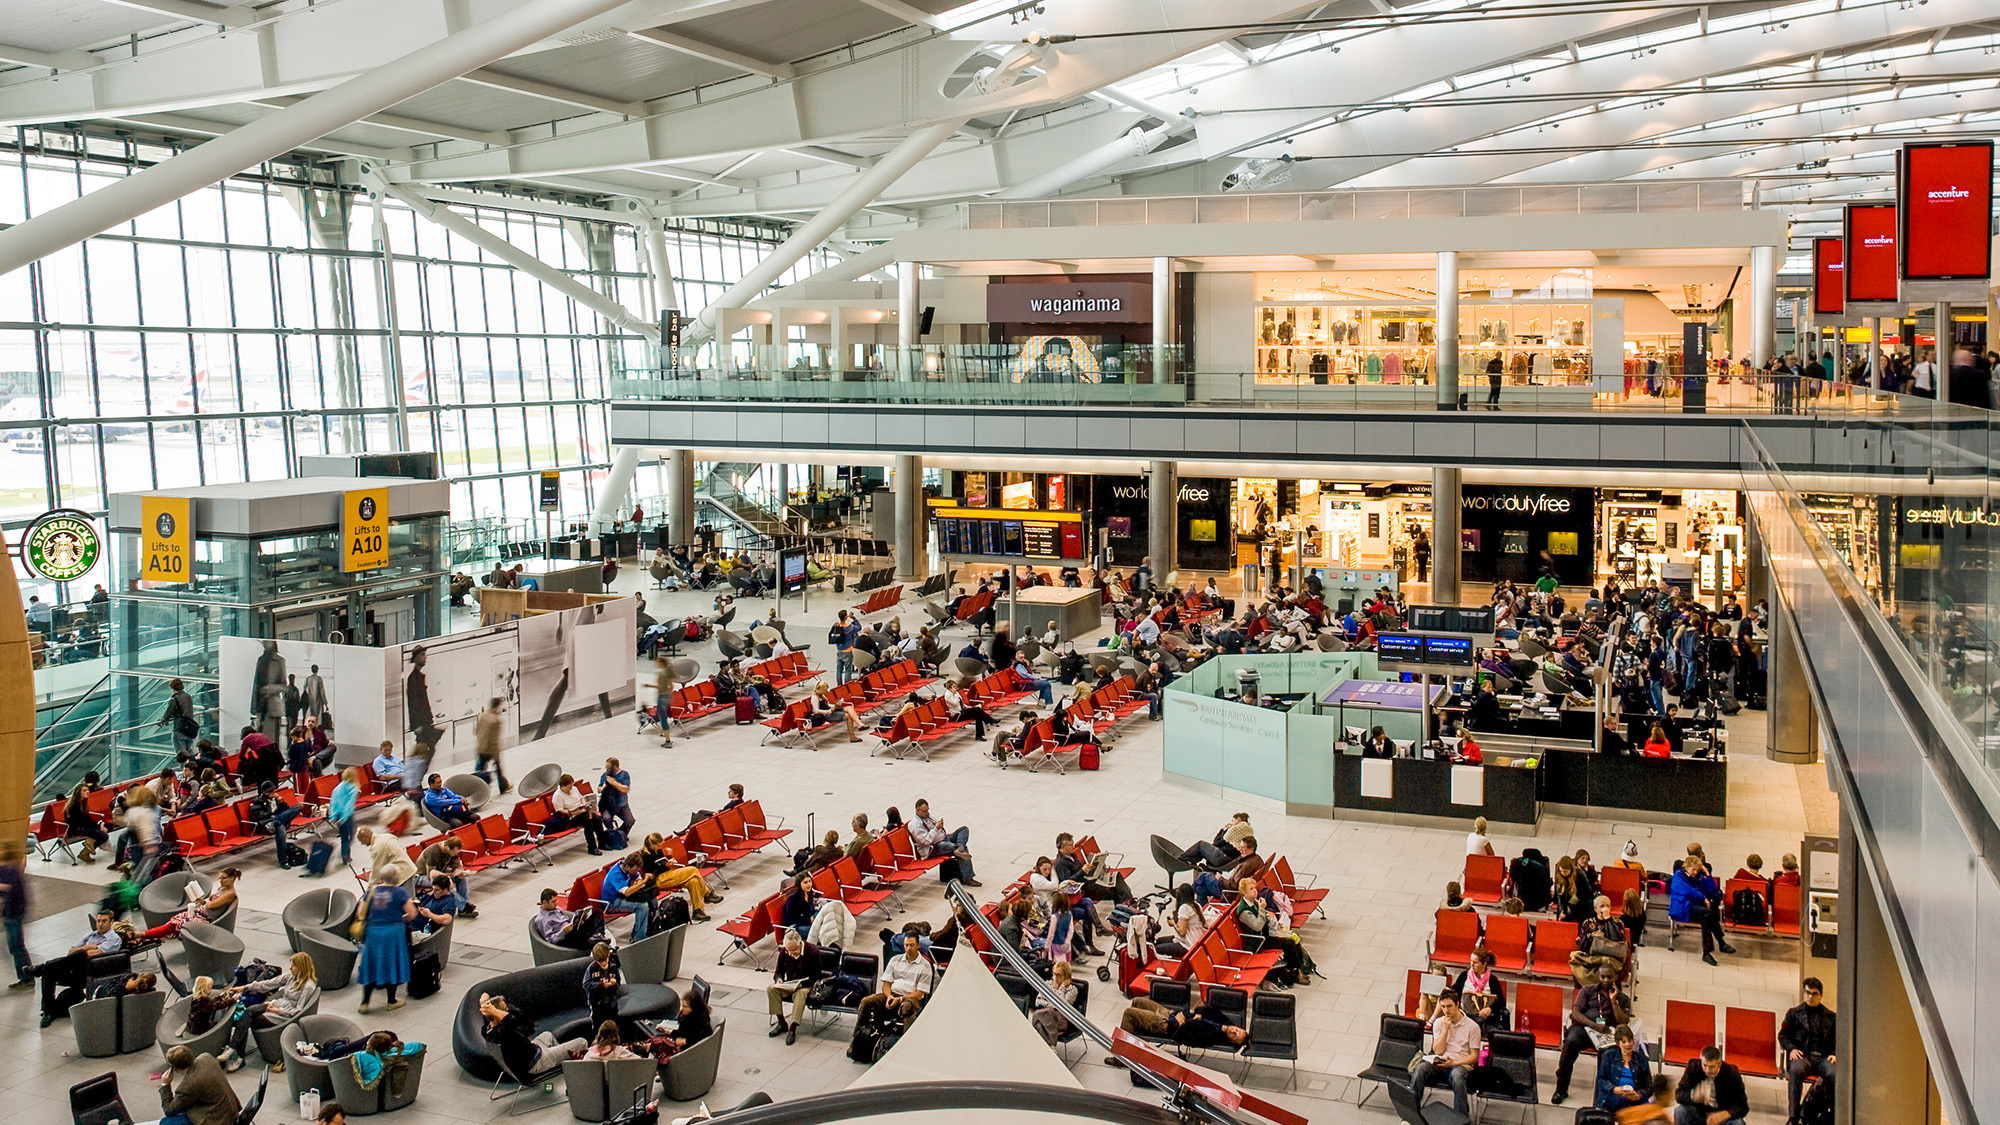 ブリティッシュ・エアウェイズ(BA)のロンドンヒースロー空港(LHR)での最低乗り継ぎ時間が変更になります